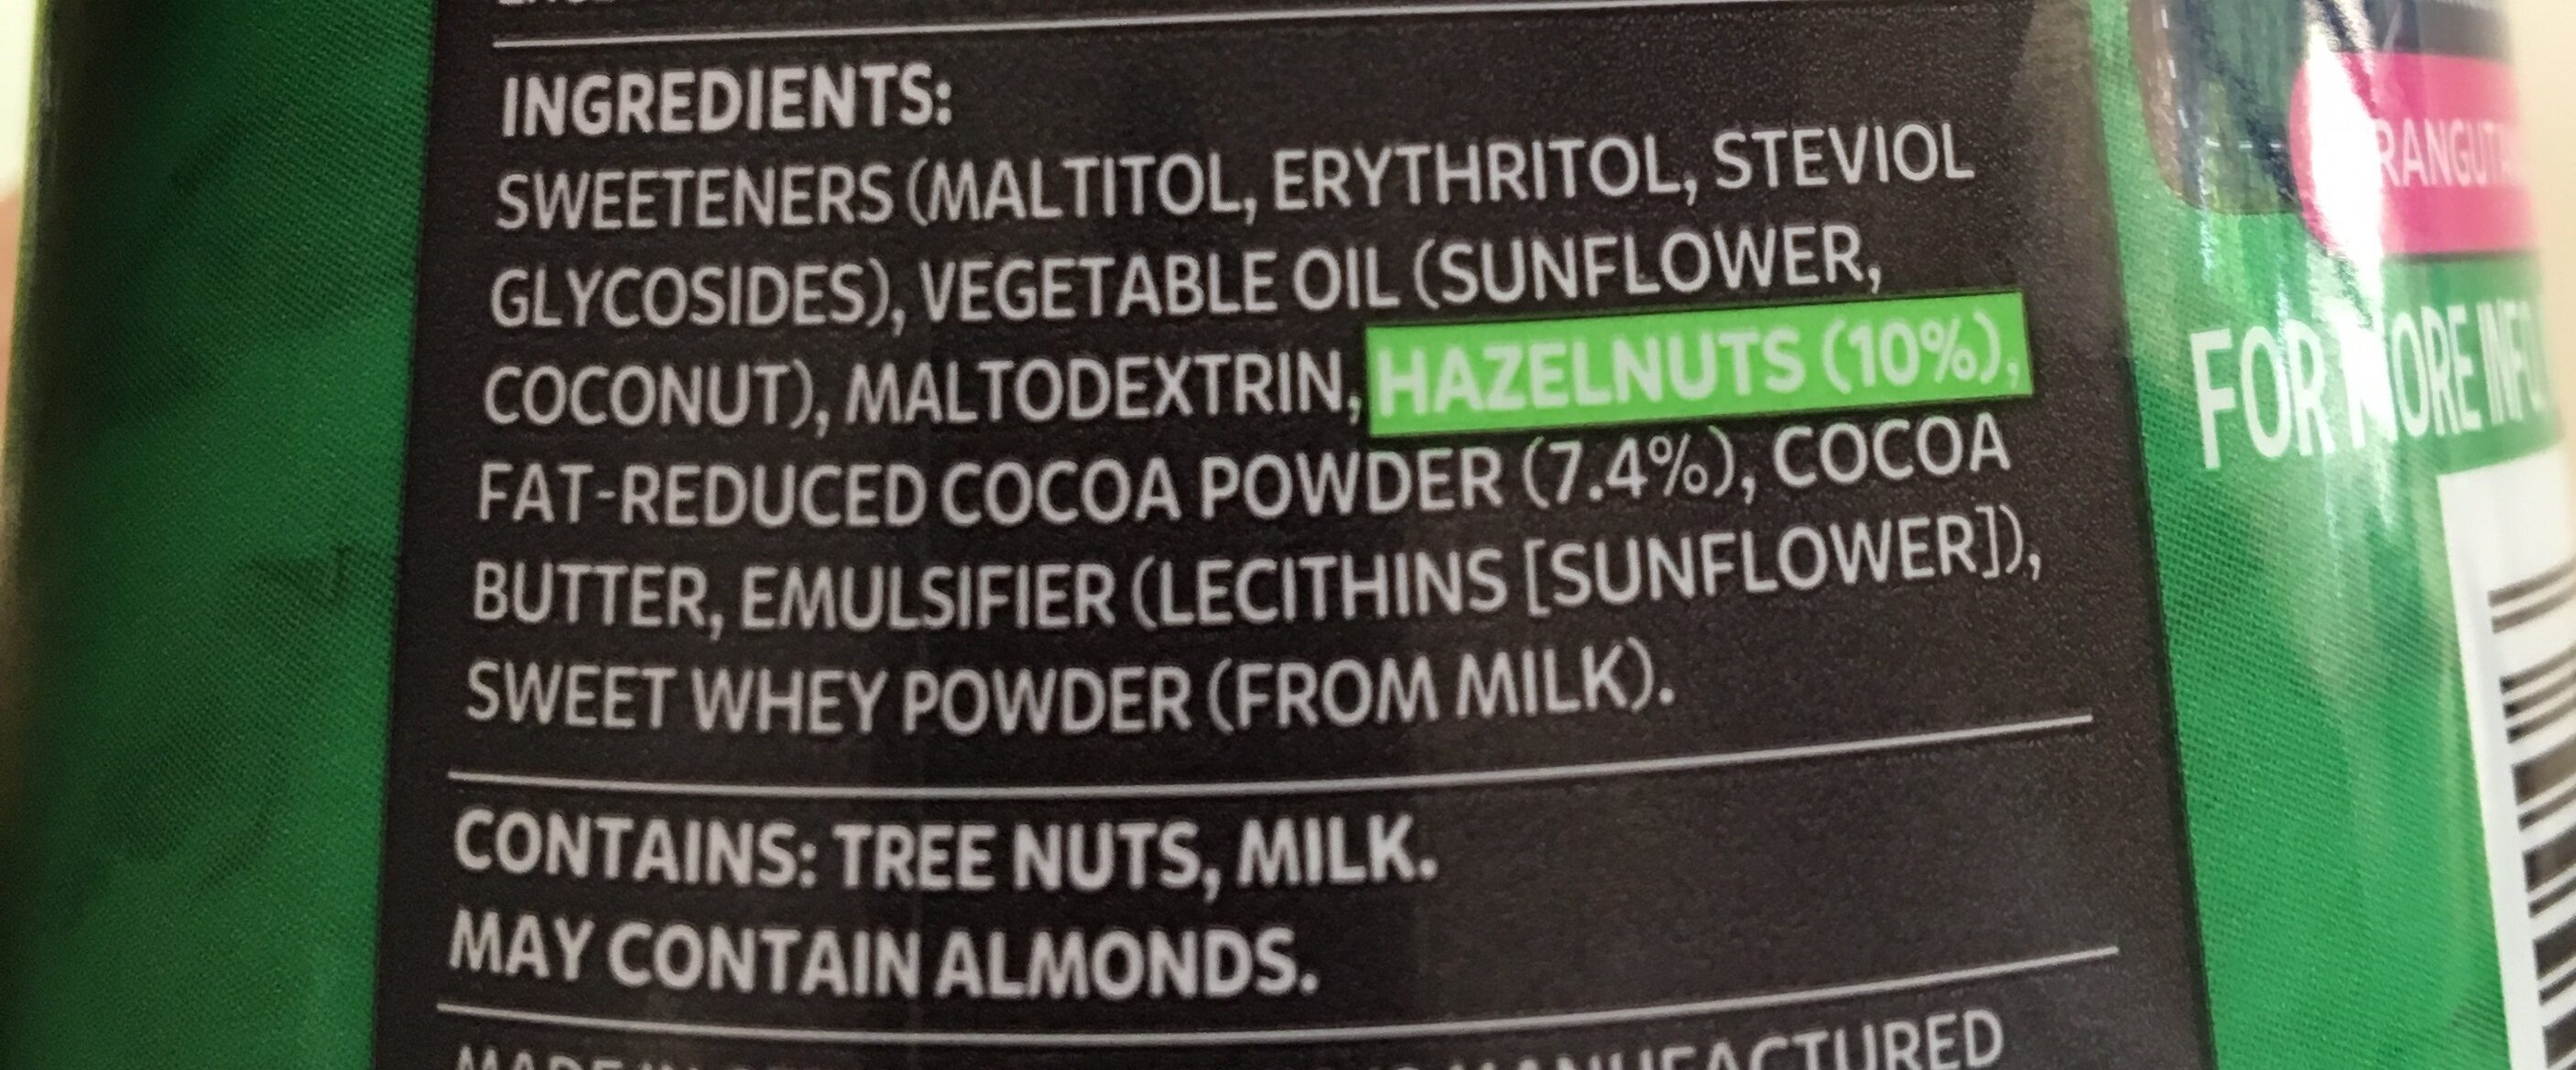 Hazelnut spread - Ingredients